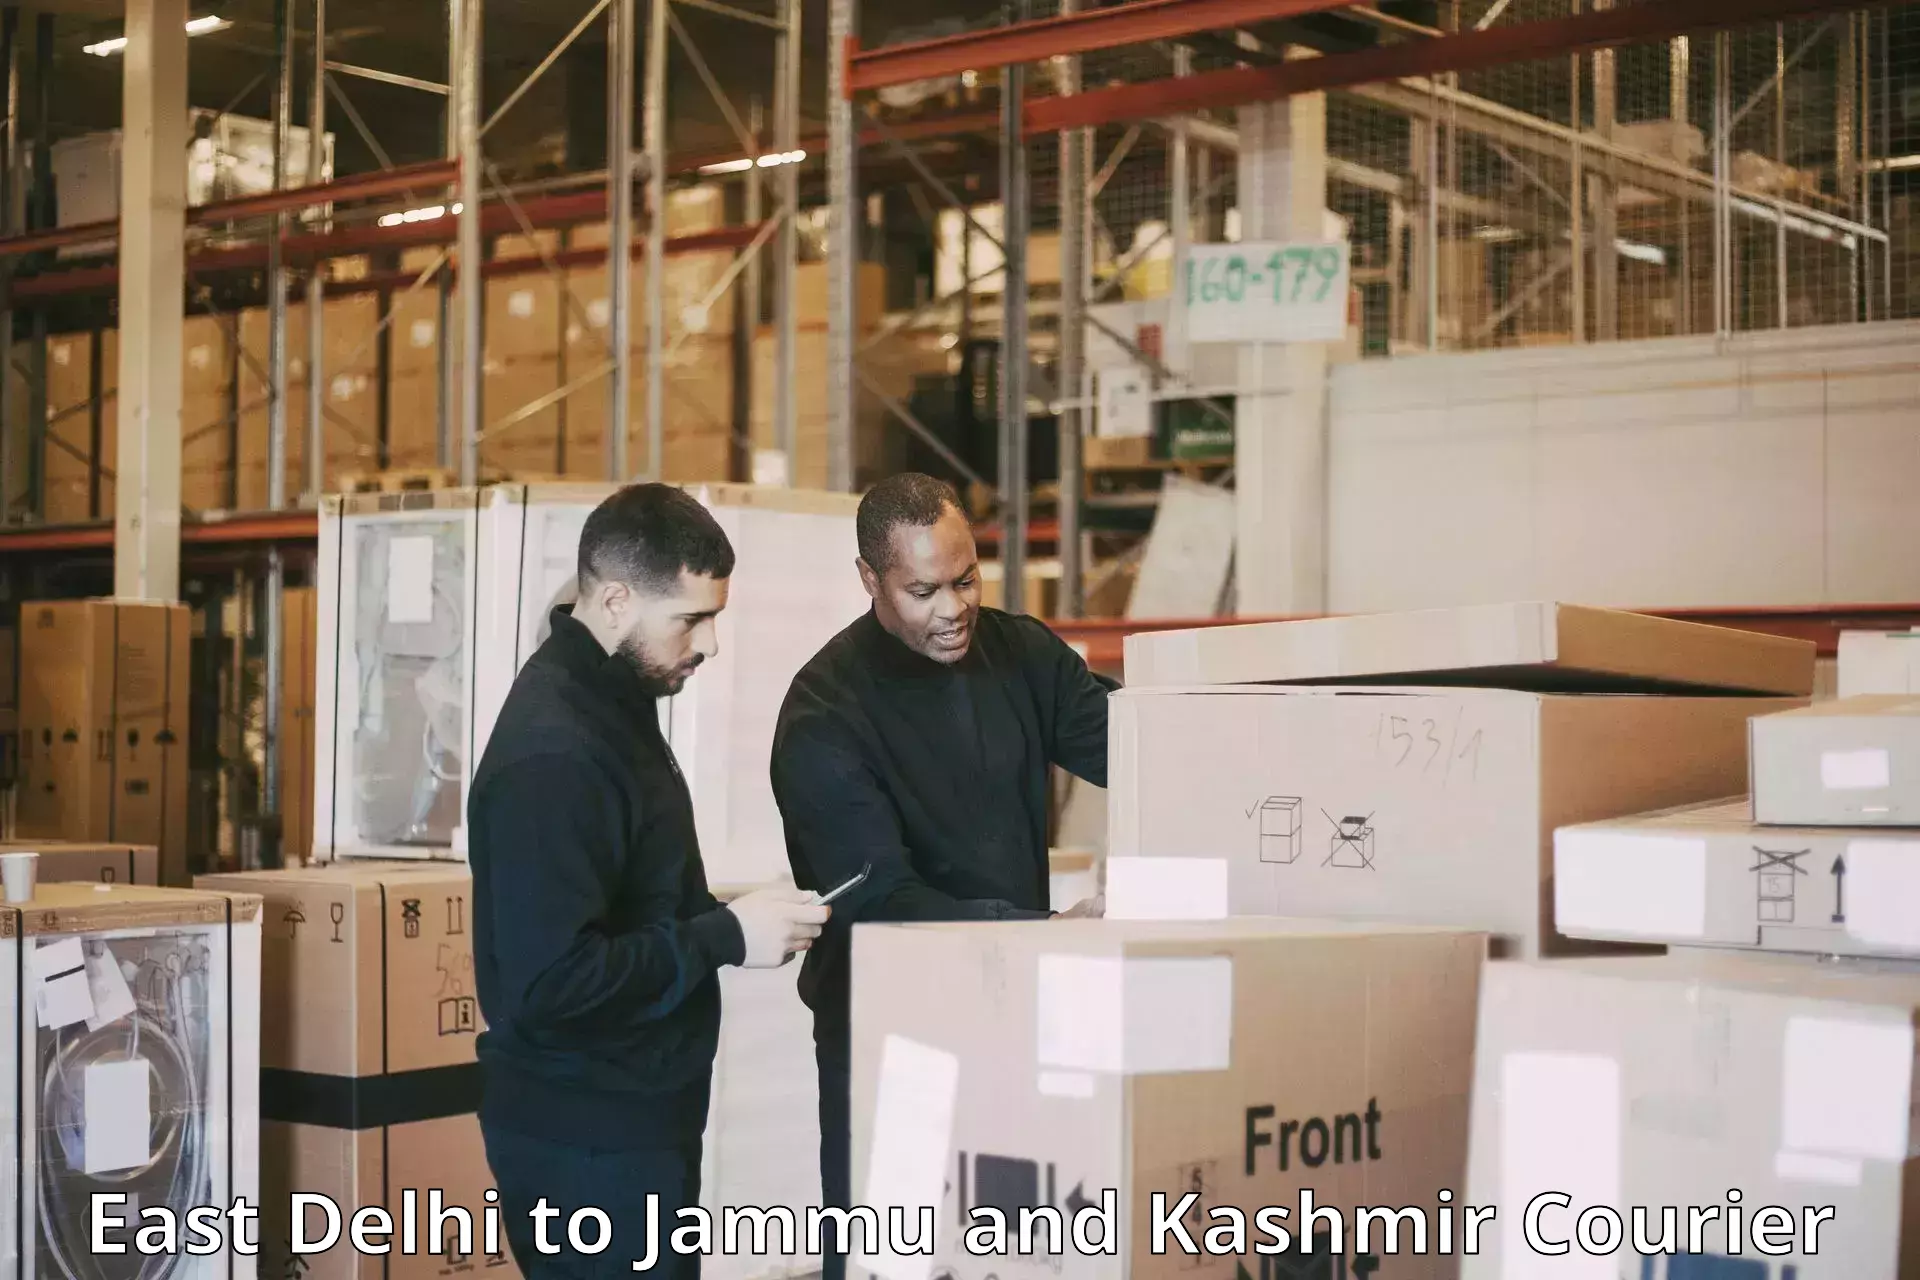 Reliable courier services East Delhi to Srinagar Kashmir